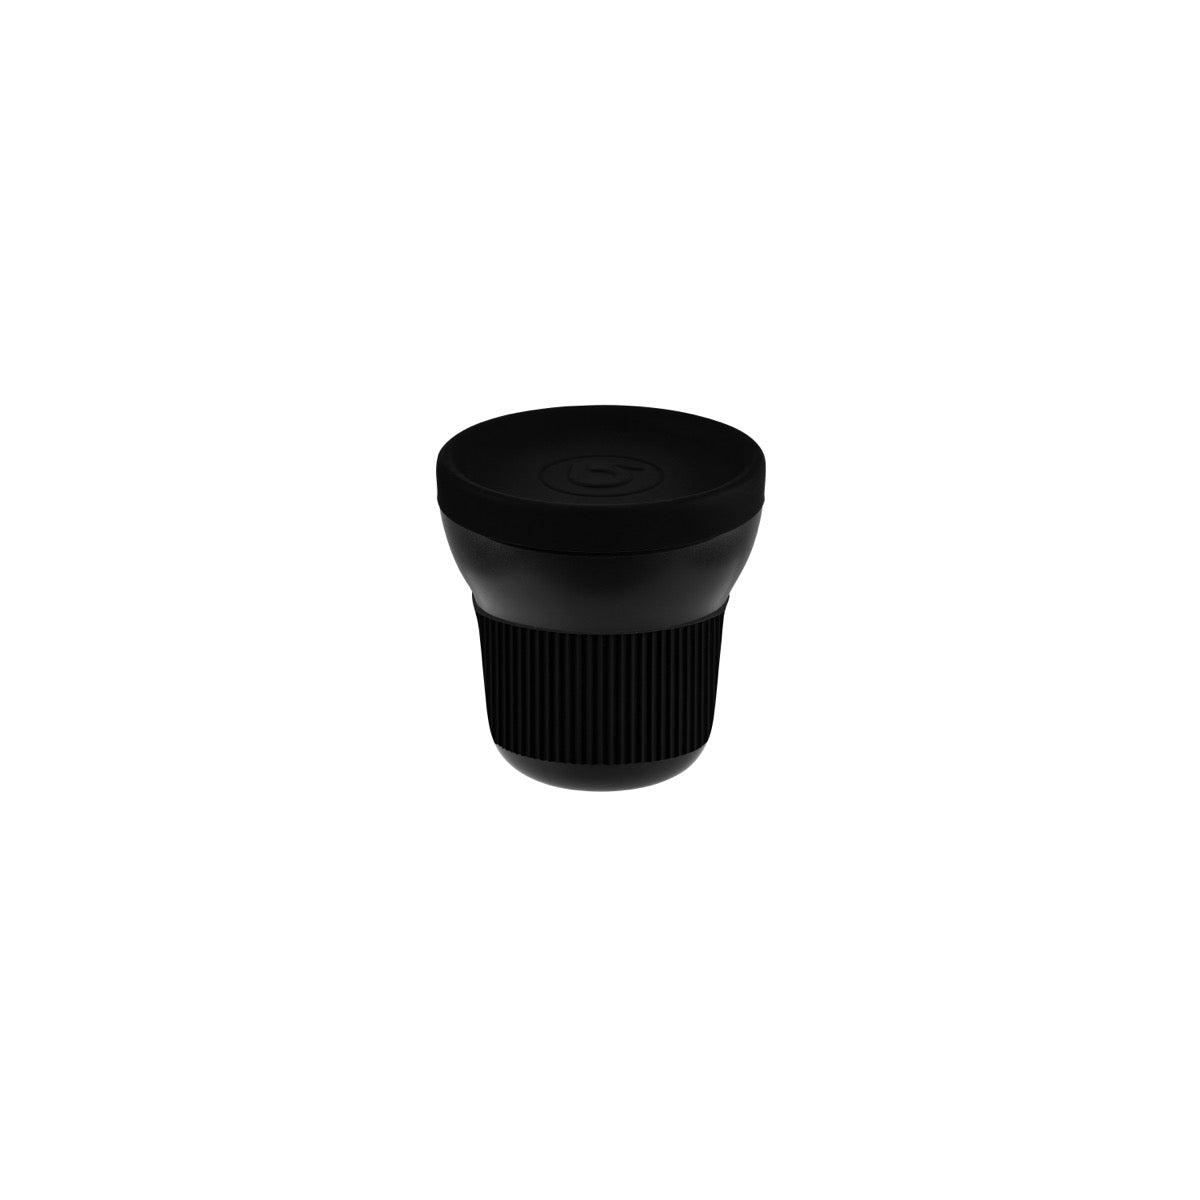 130787 Bonna Notte Black Softline Mug 95x96mm/300ml Tomkin Australia Hospitality Supplies